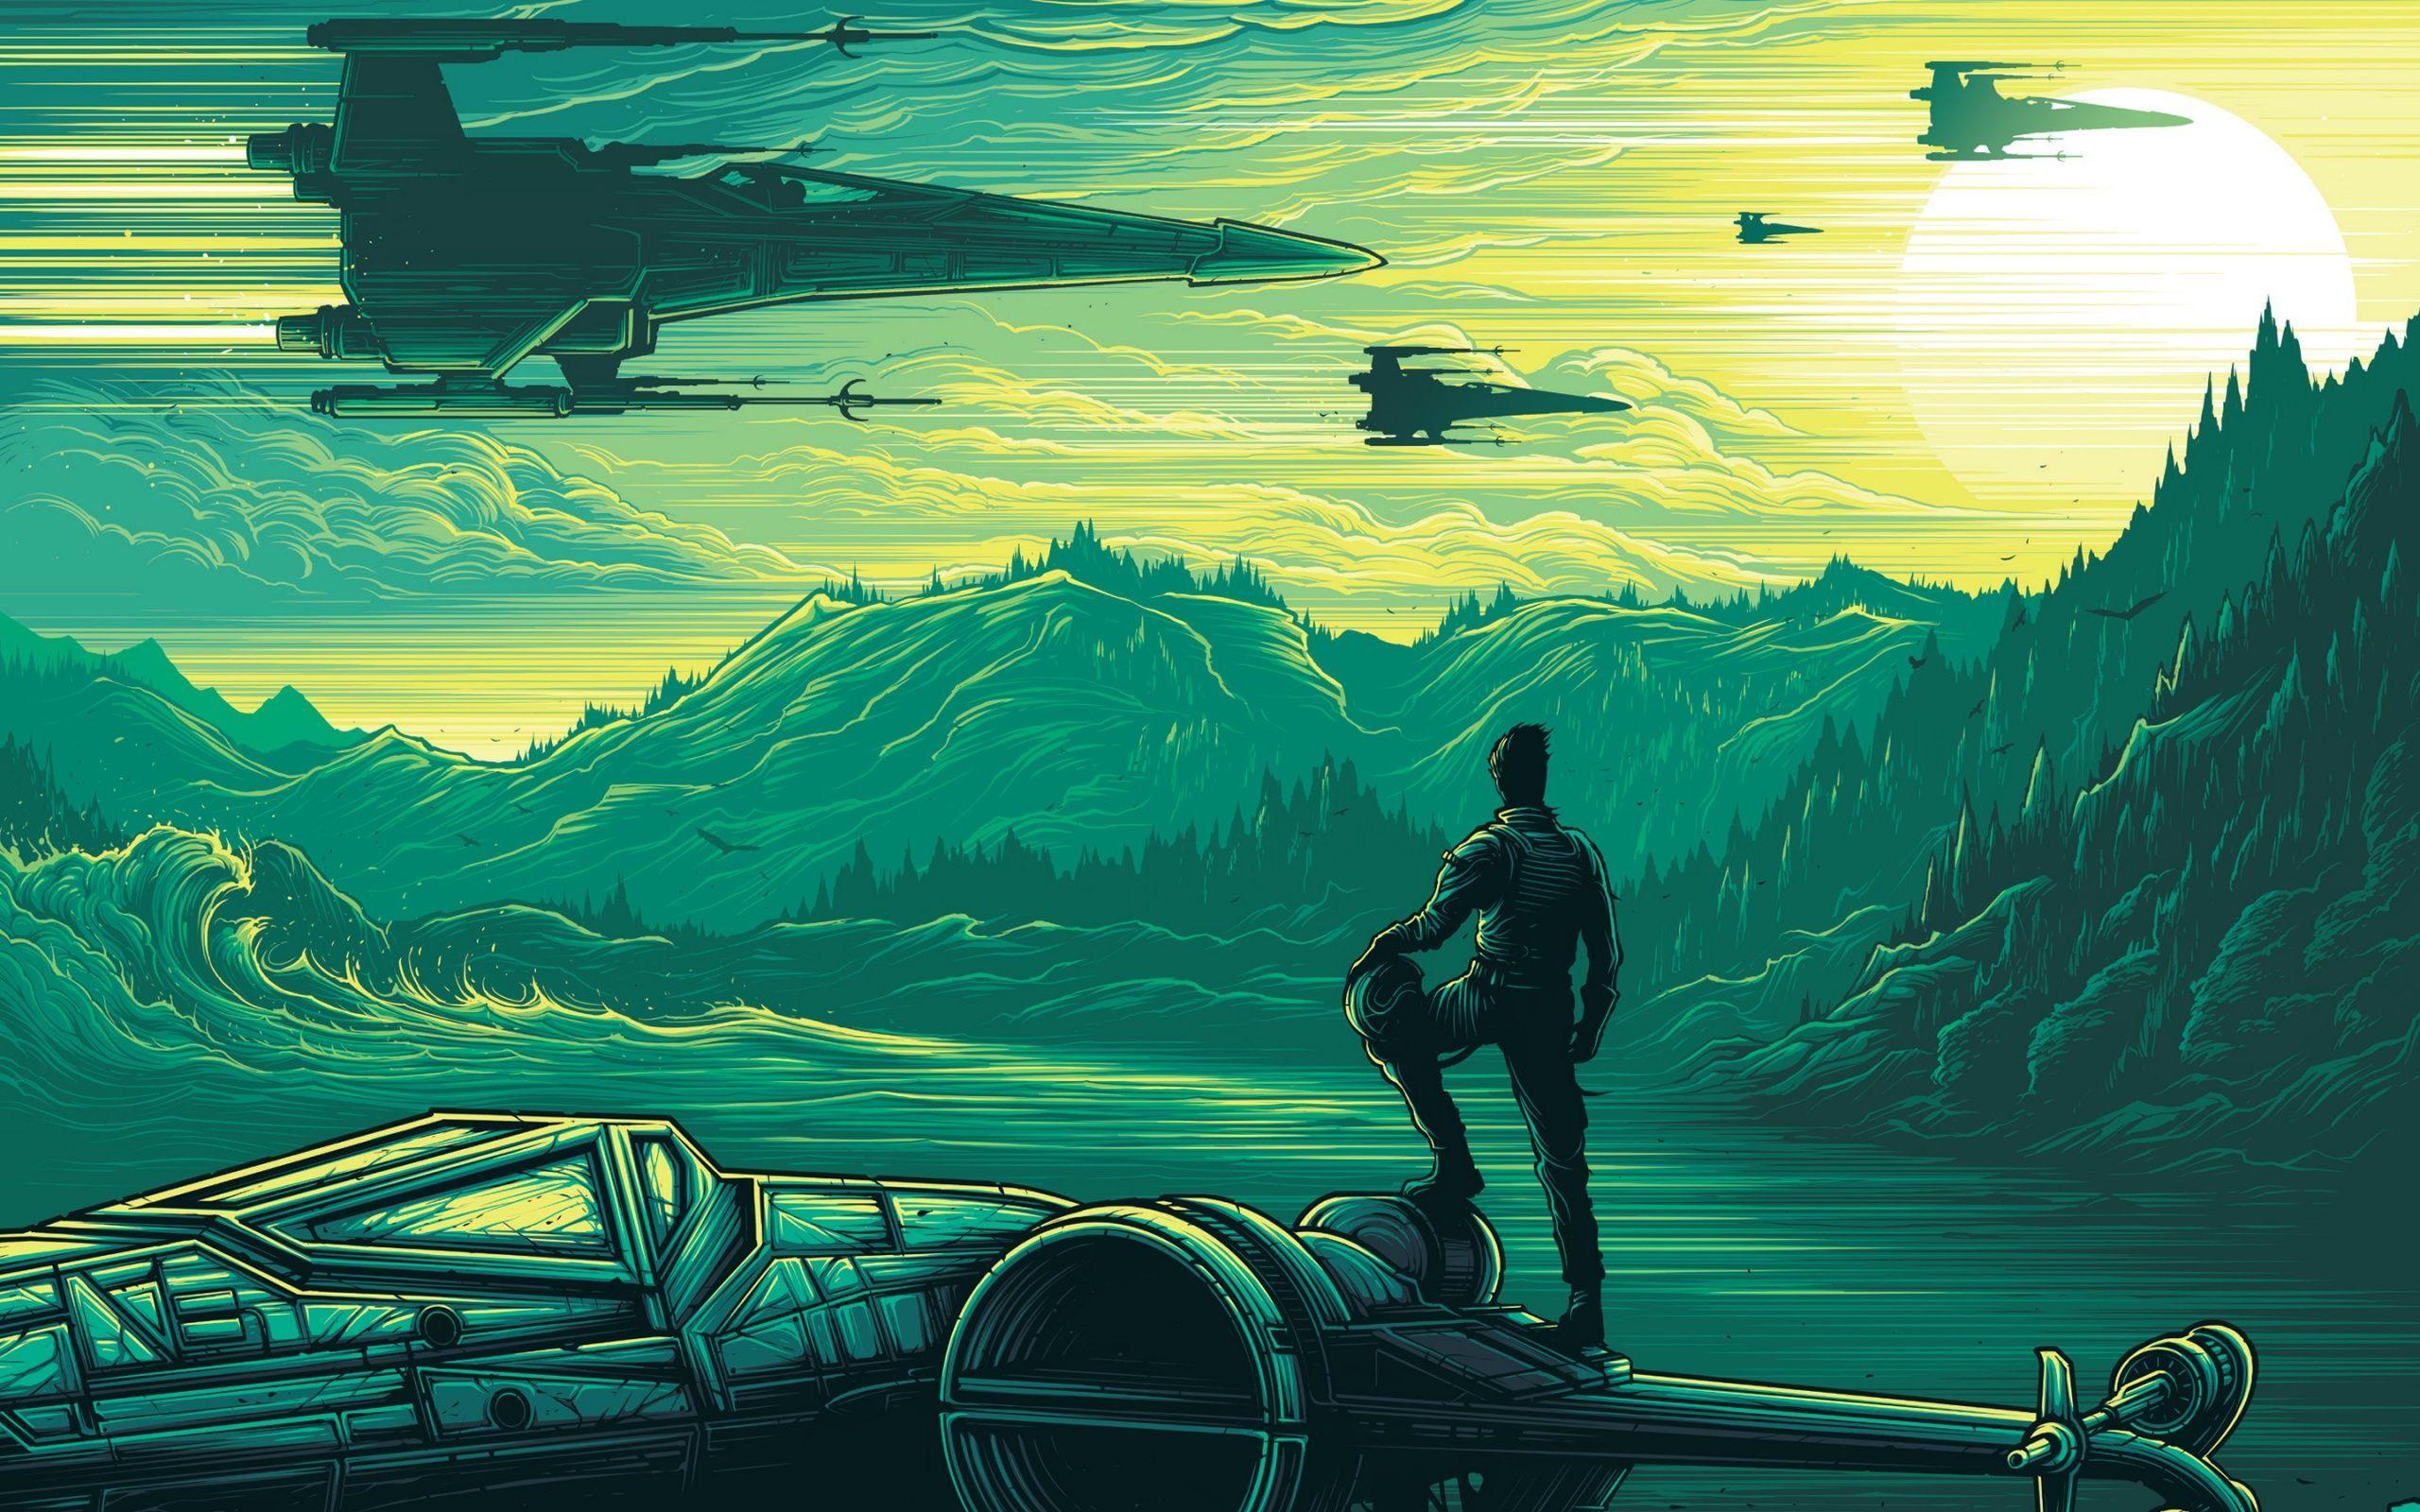 Star Wars Fan Art Wallpapers - Top Những Hình Ảnh Đẹp